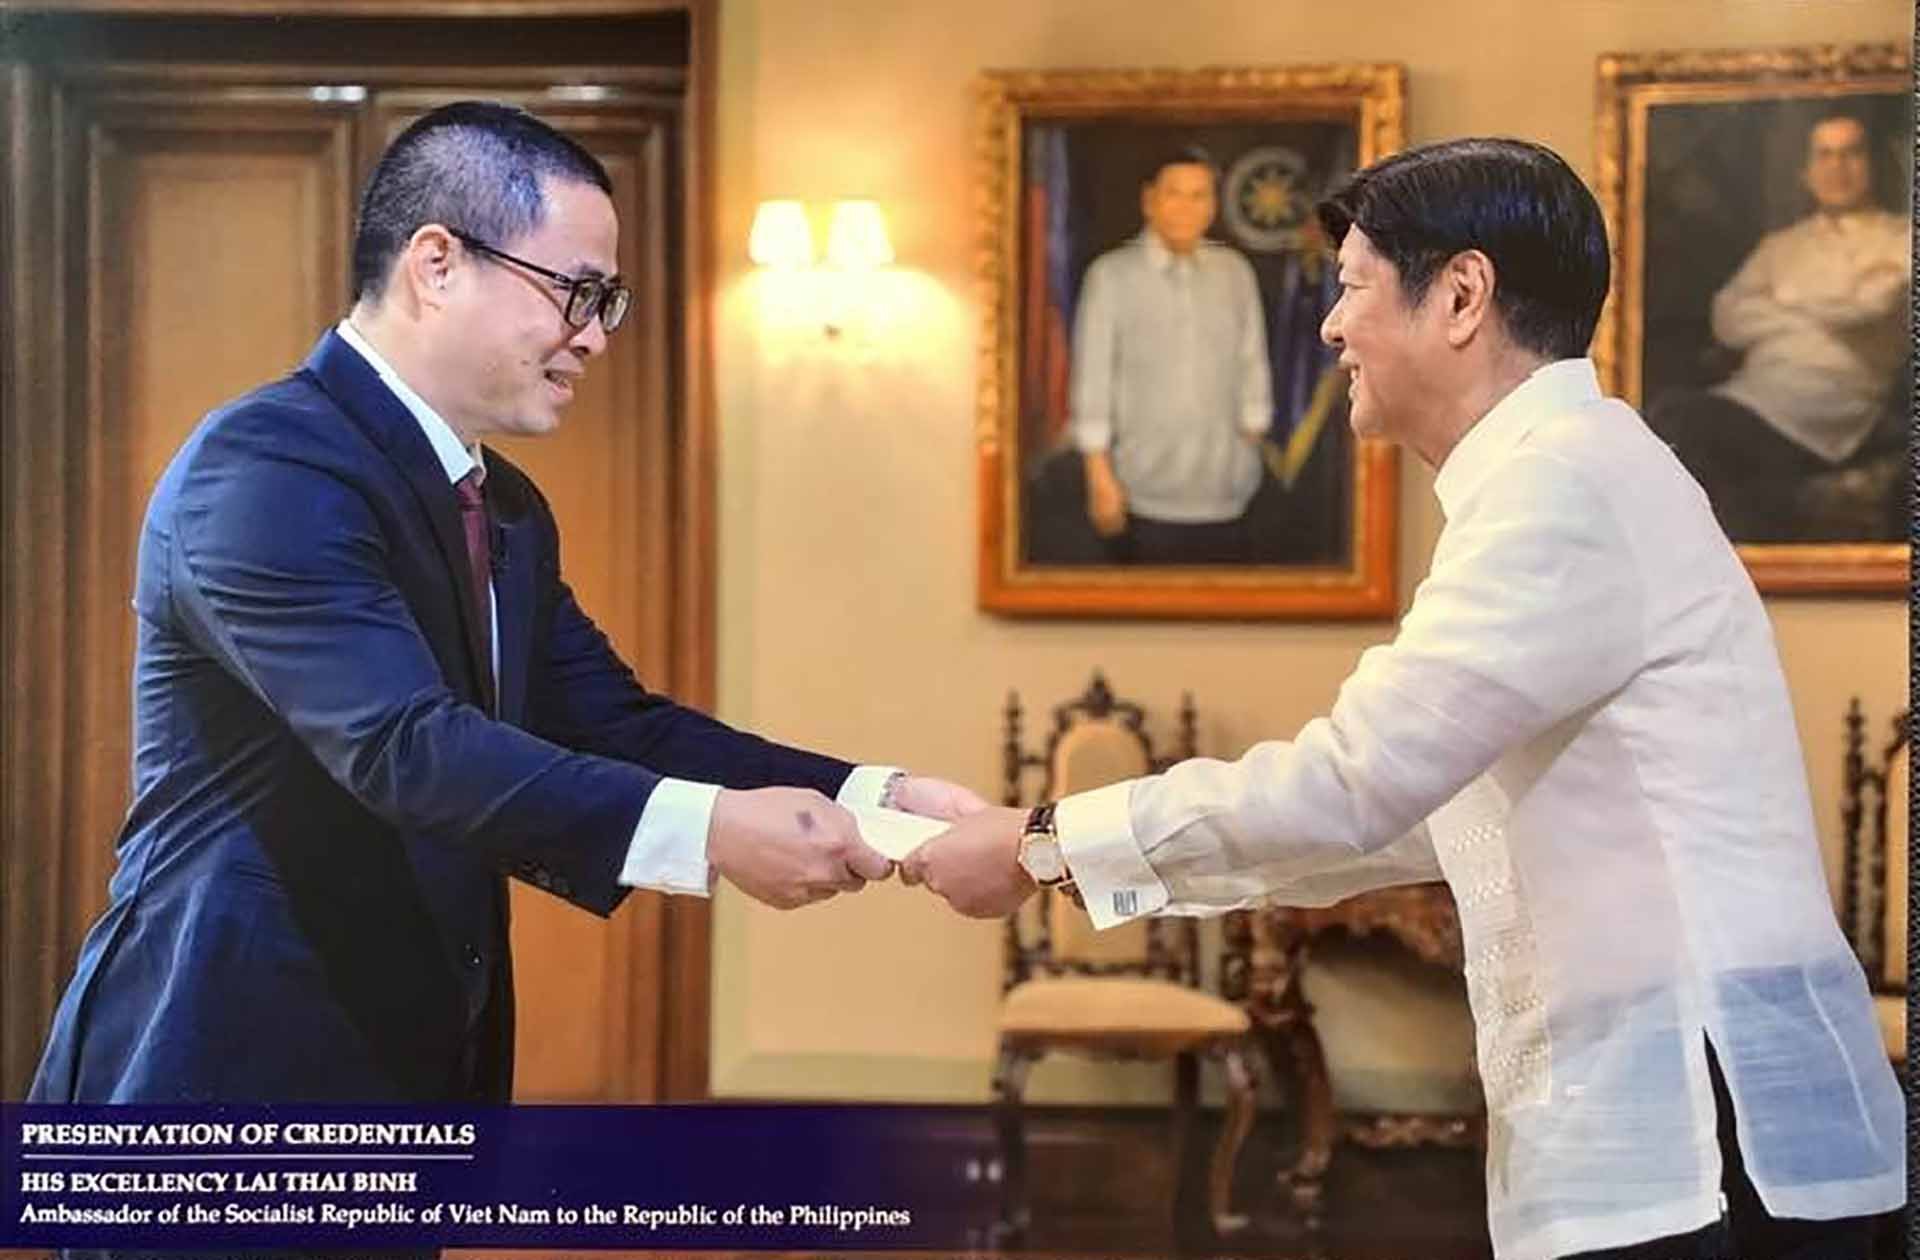 Đại sứ Lại Thái Bình trình Thư ủy nhiệm lên Tổng thống Philippines Ferdinand Romualdez Marcos Jr.